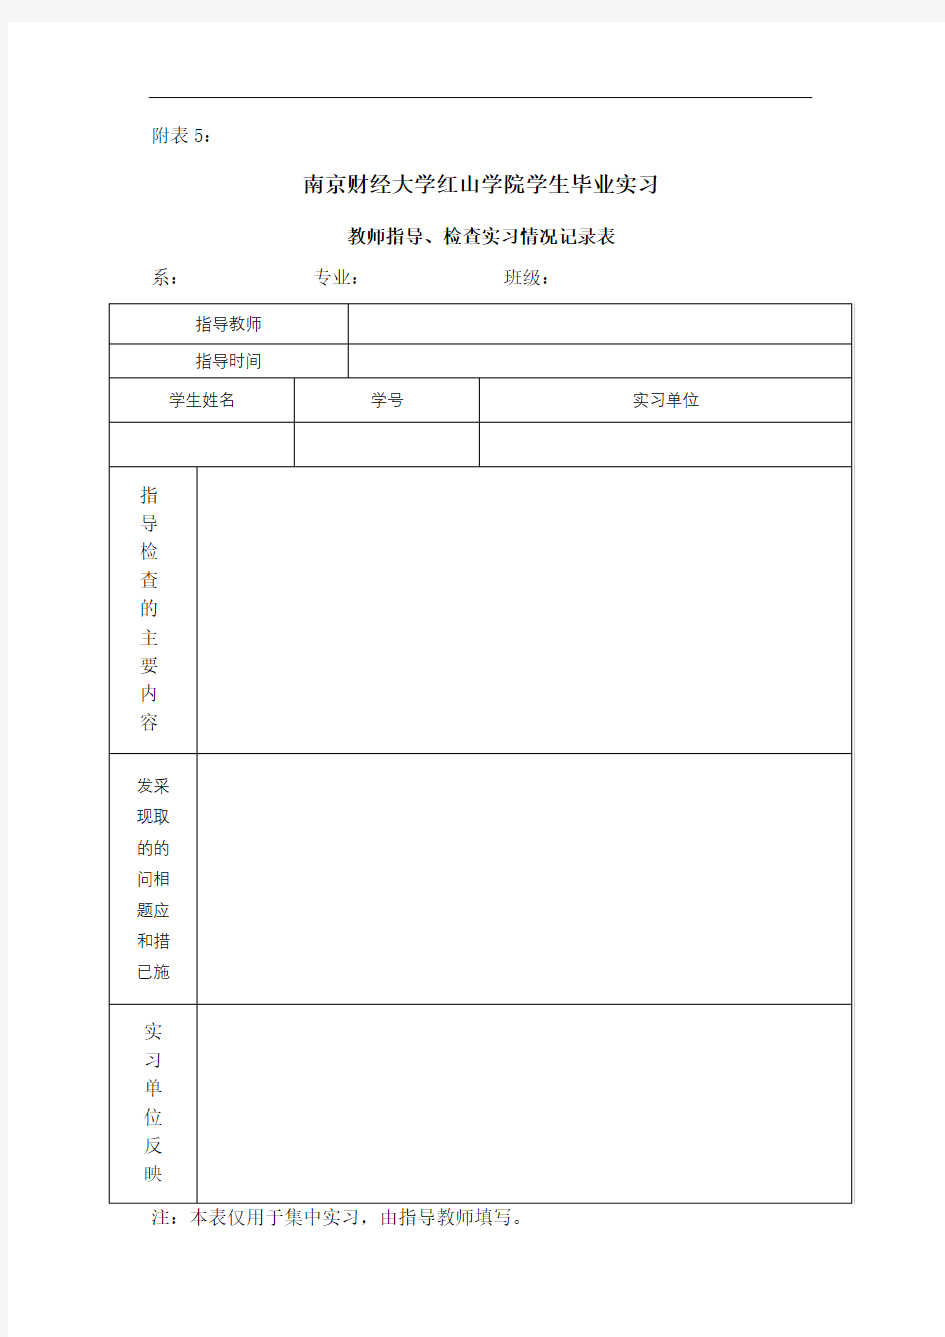 南京财经大学红山学院学生毕业实习 教师指导、检查实习情况记录表